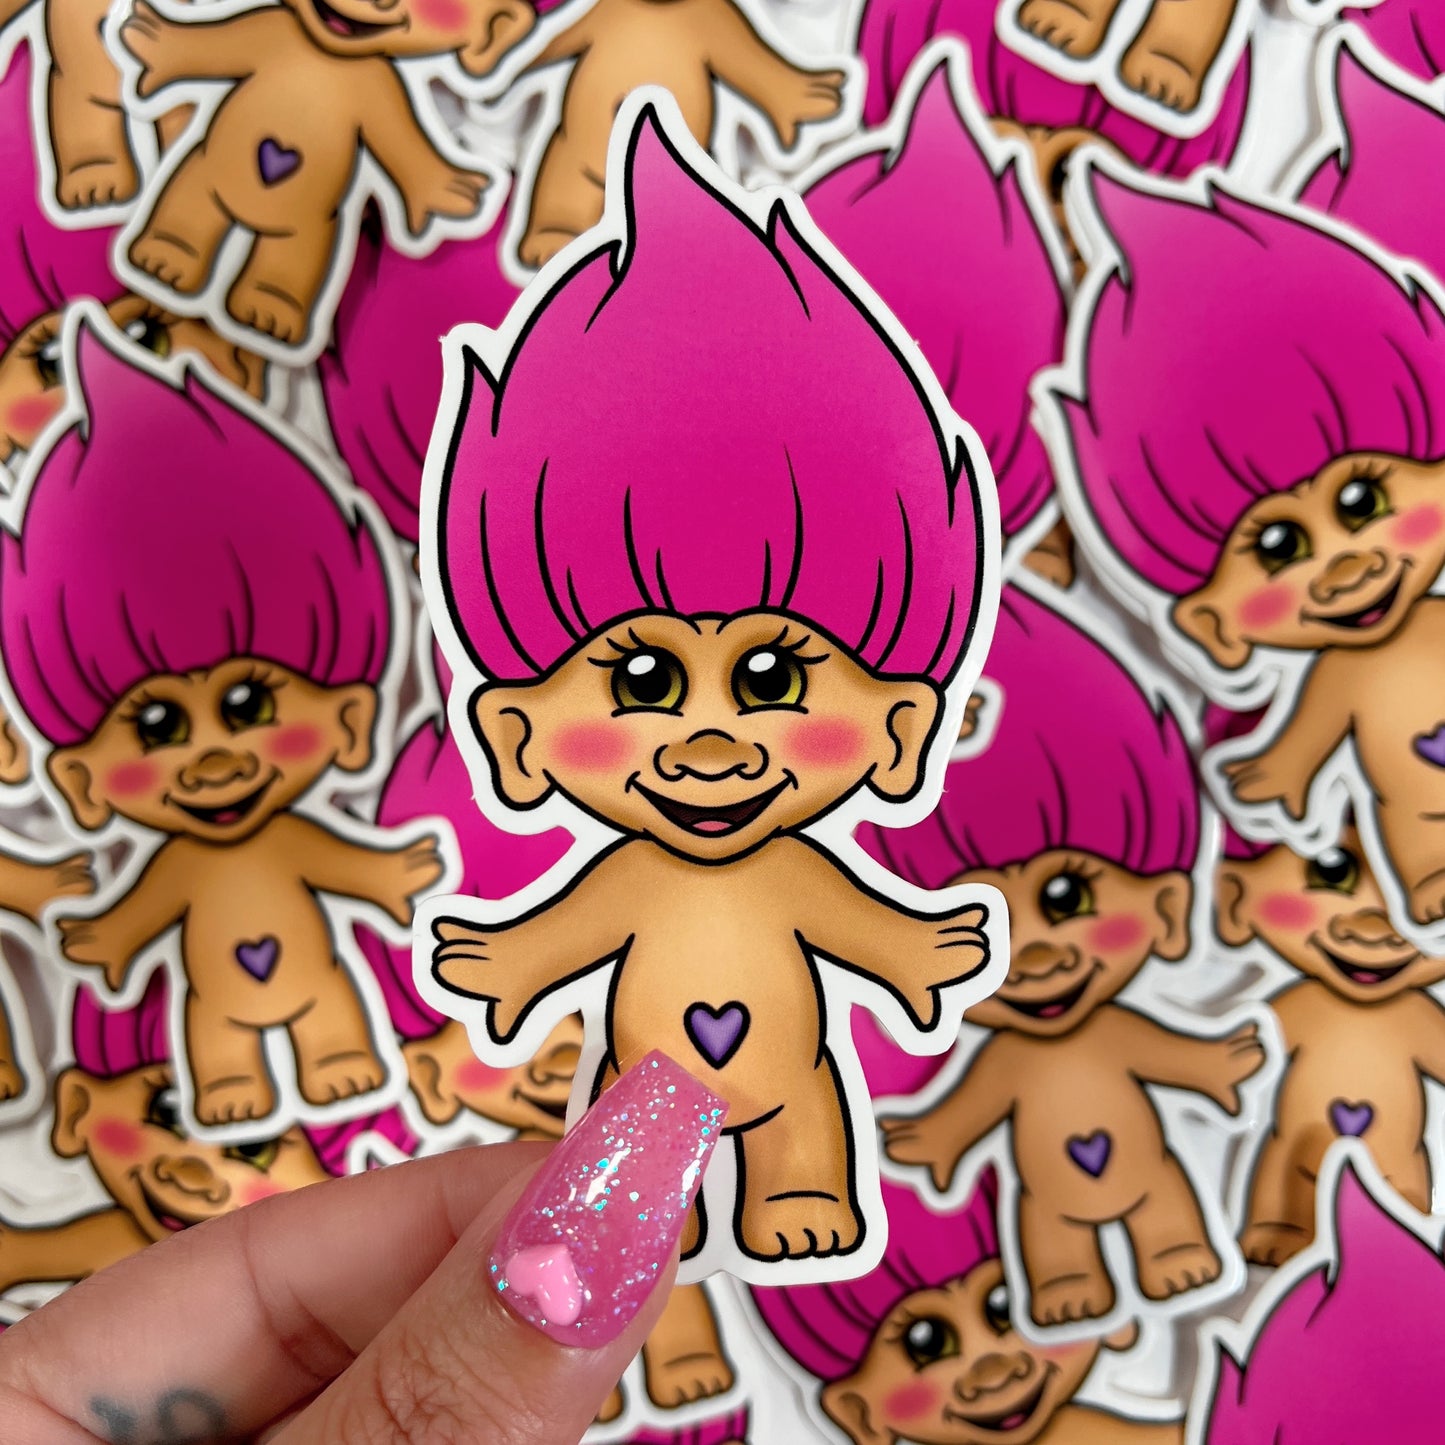 Pink Troll Doll - Sticker